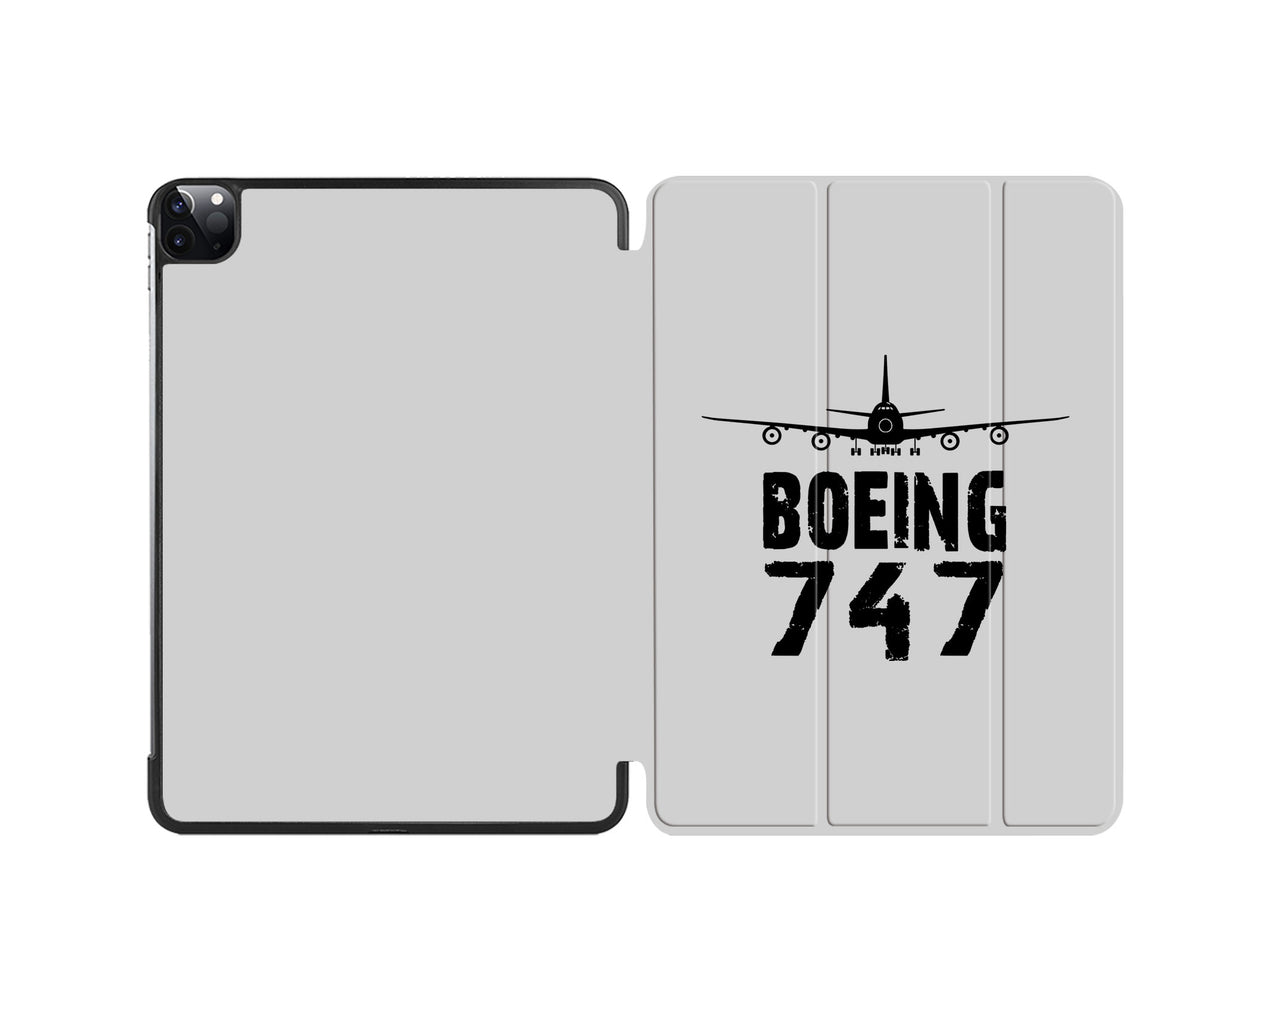 Boeing 747 & Plane Designed iPad Cases